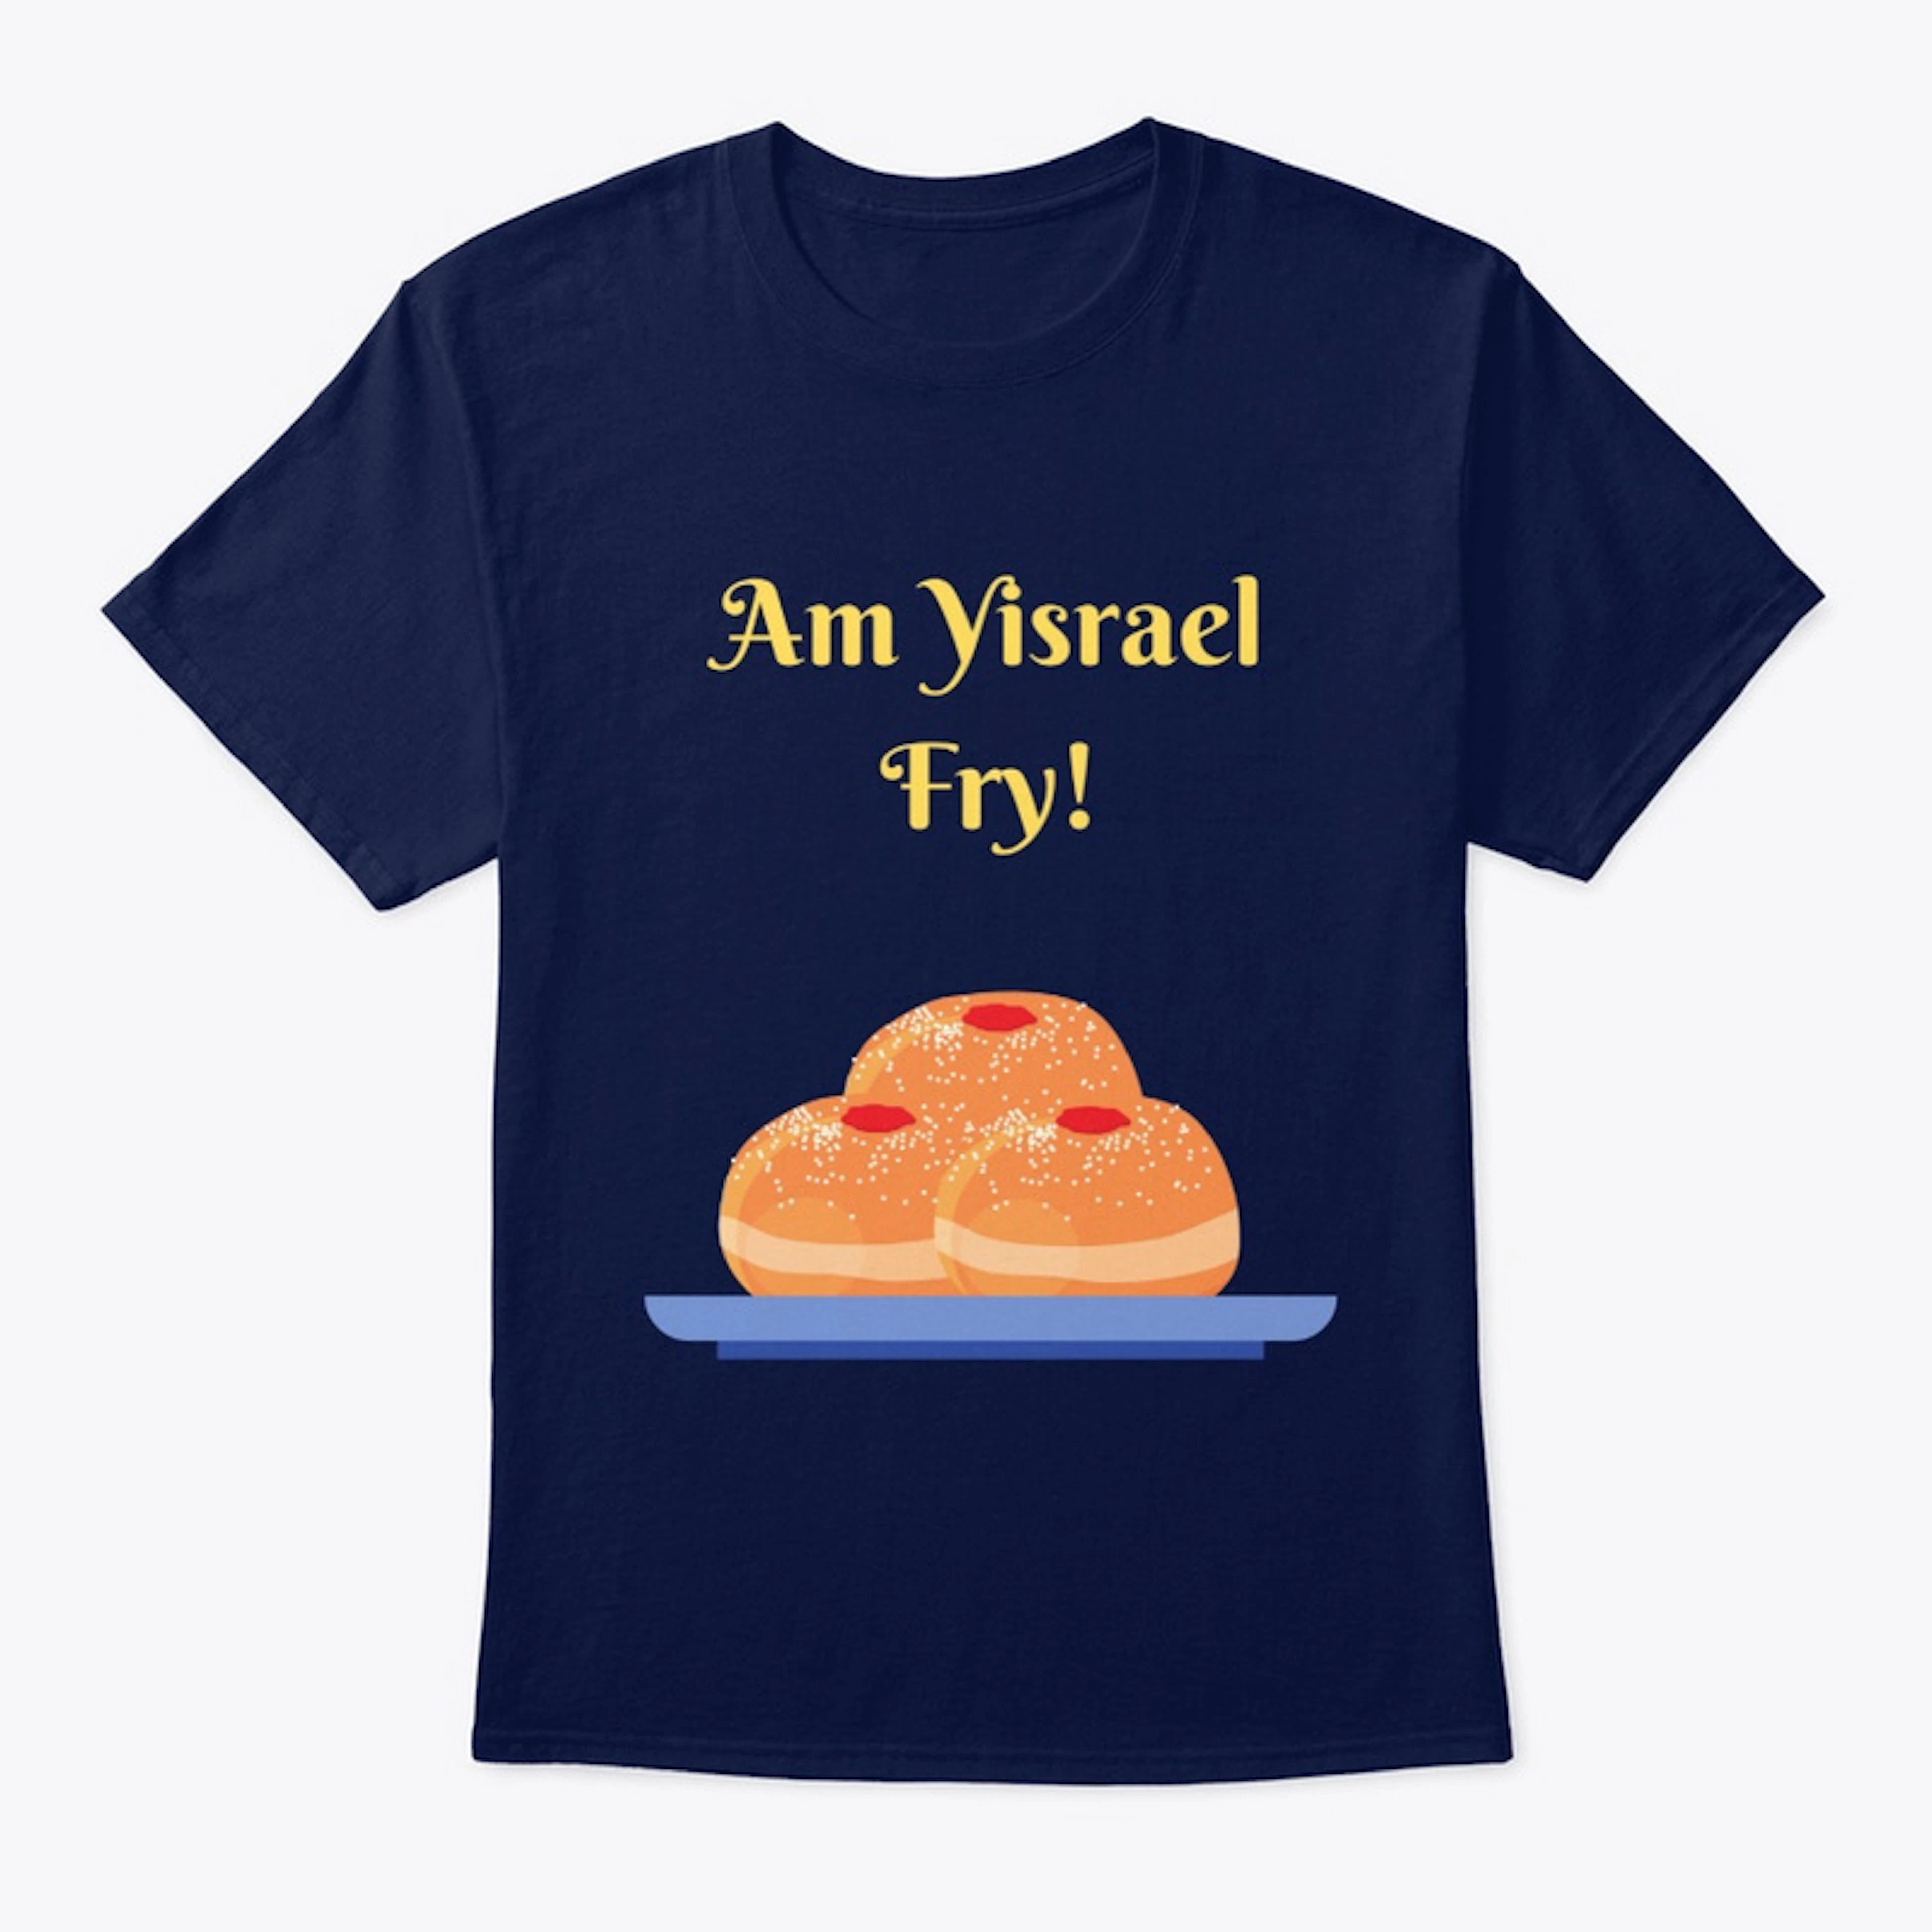 Am Yisrael Fry